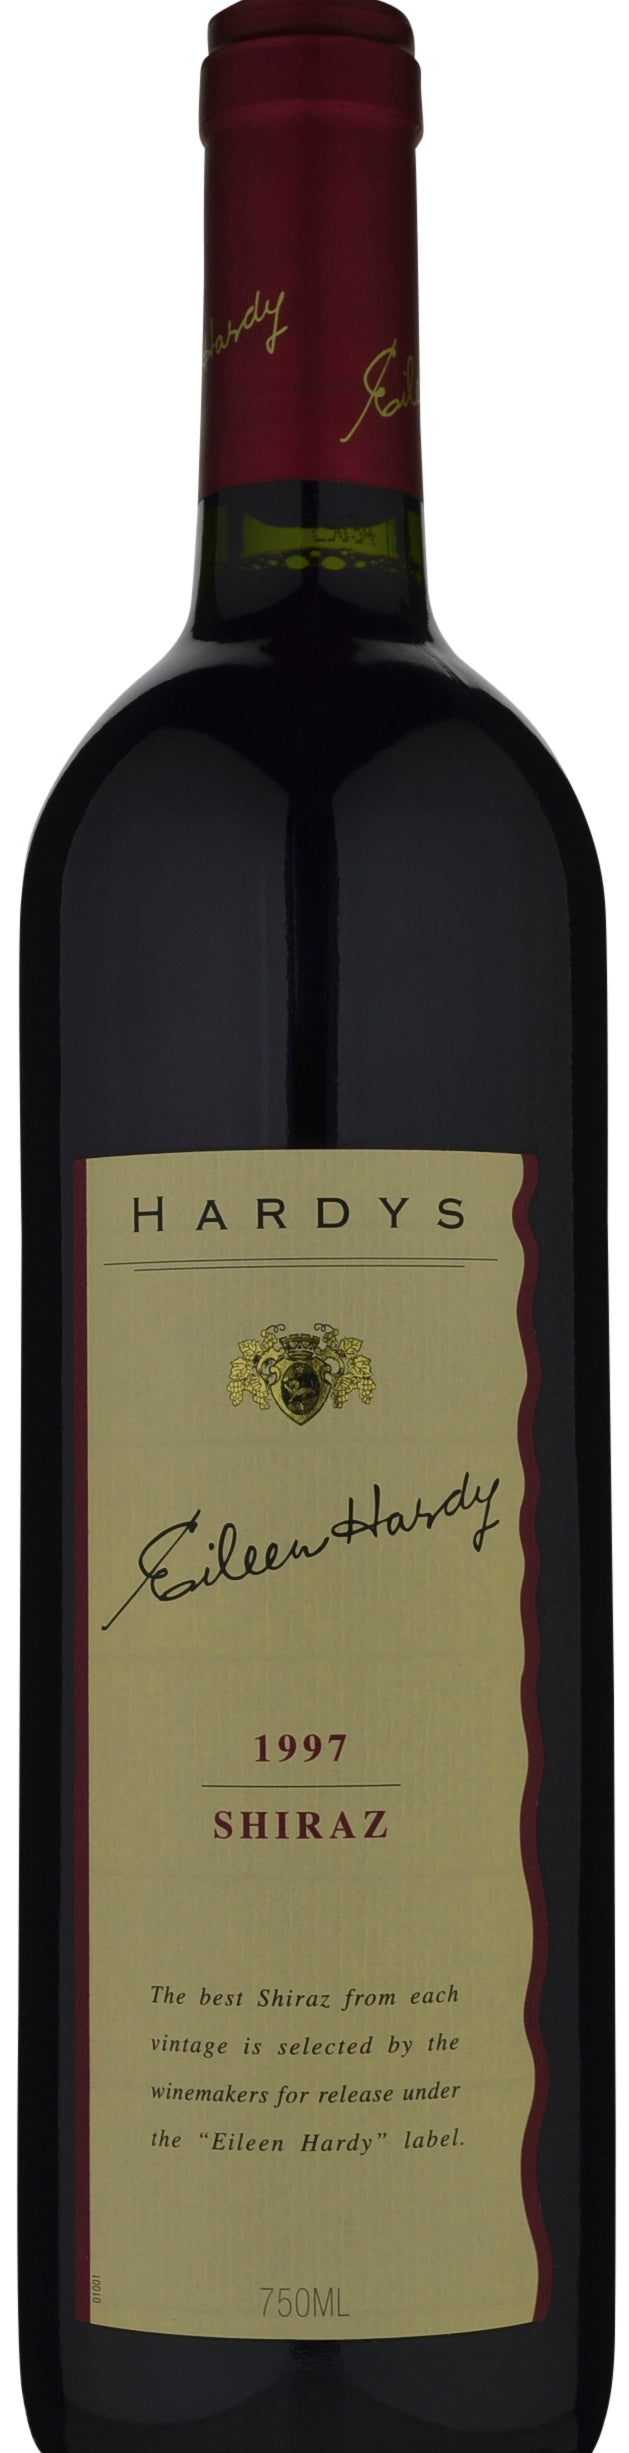 Hardy's Eileen Hardy Shiraz 1997